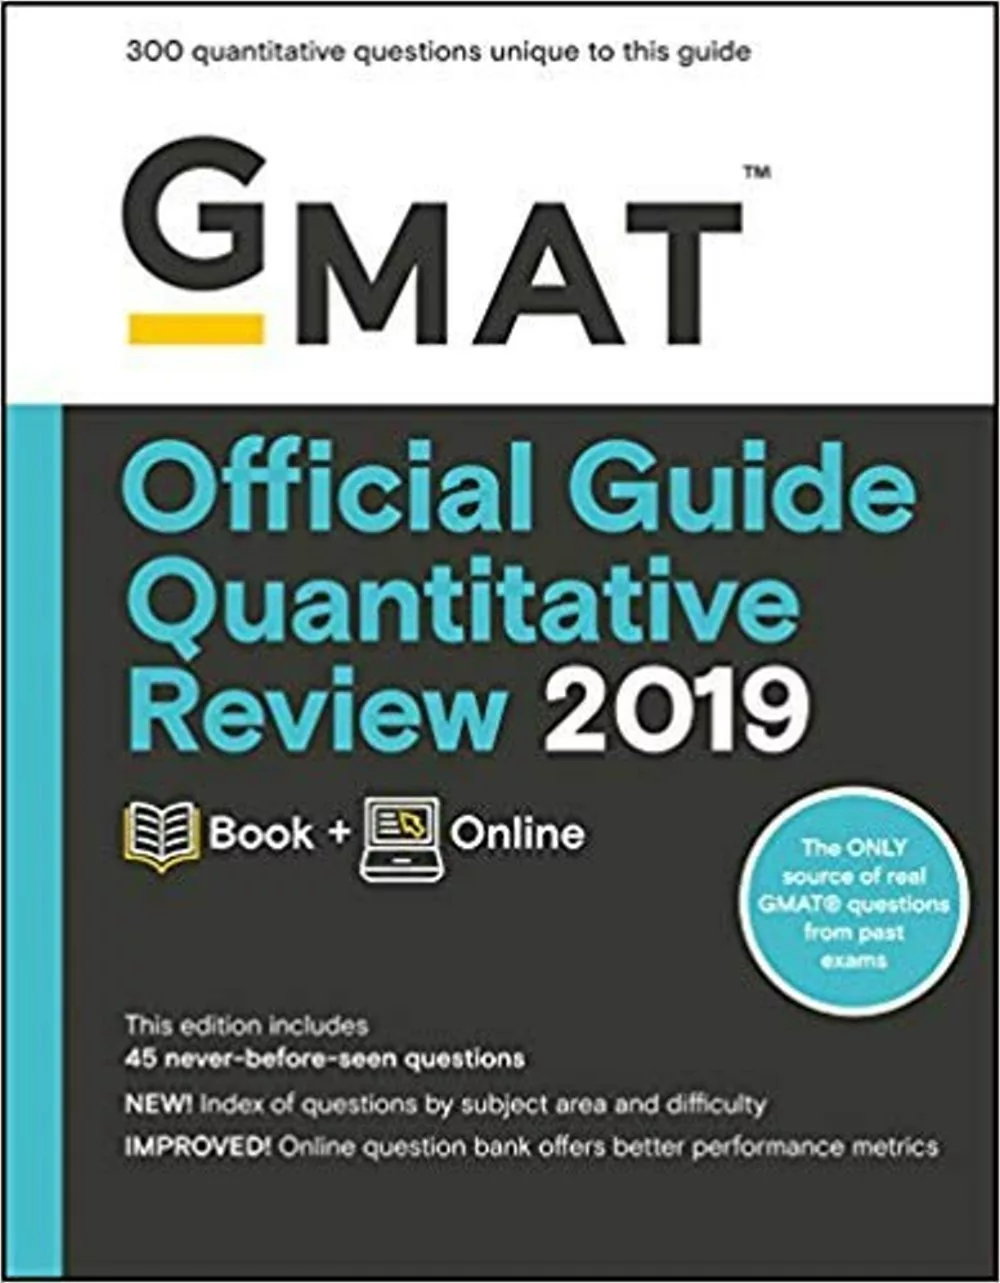 GMAT Official Guide Quantitative Review 2019: Includes Online Content